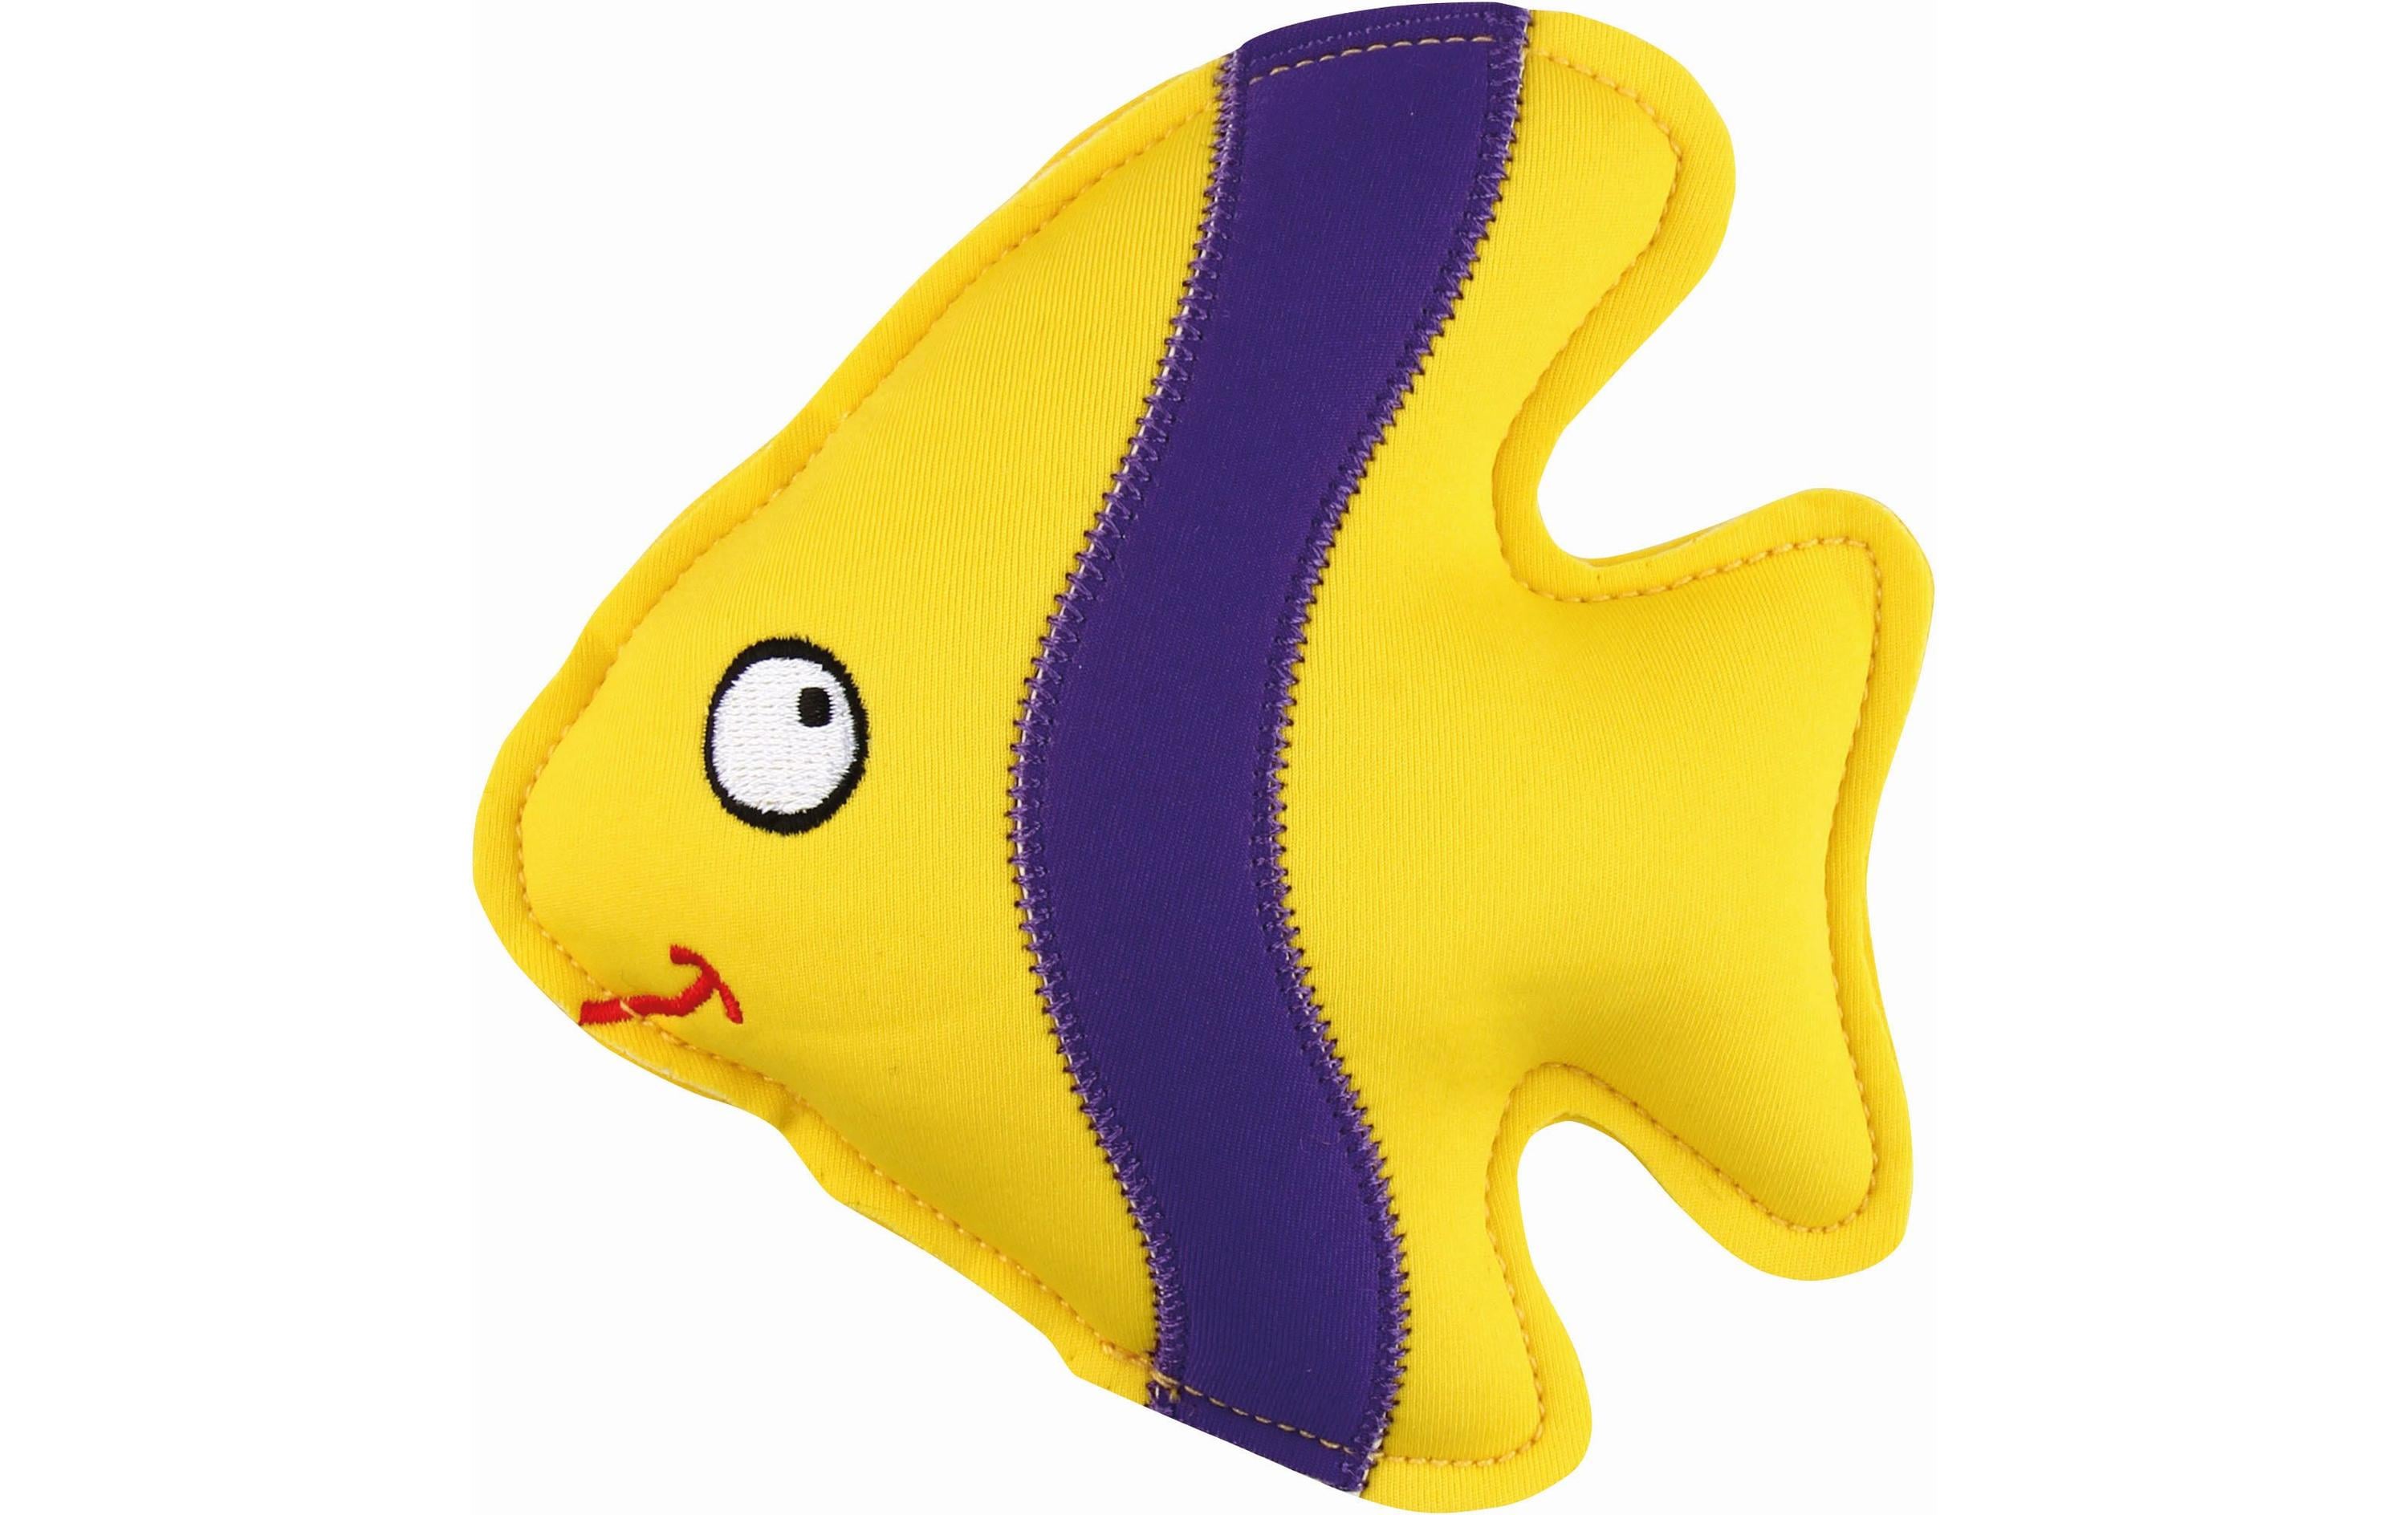 Nobby Schwimmspielzeug Floating Fisch, 14.5 cm, Gelb